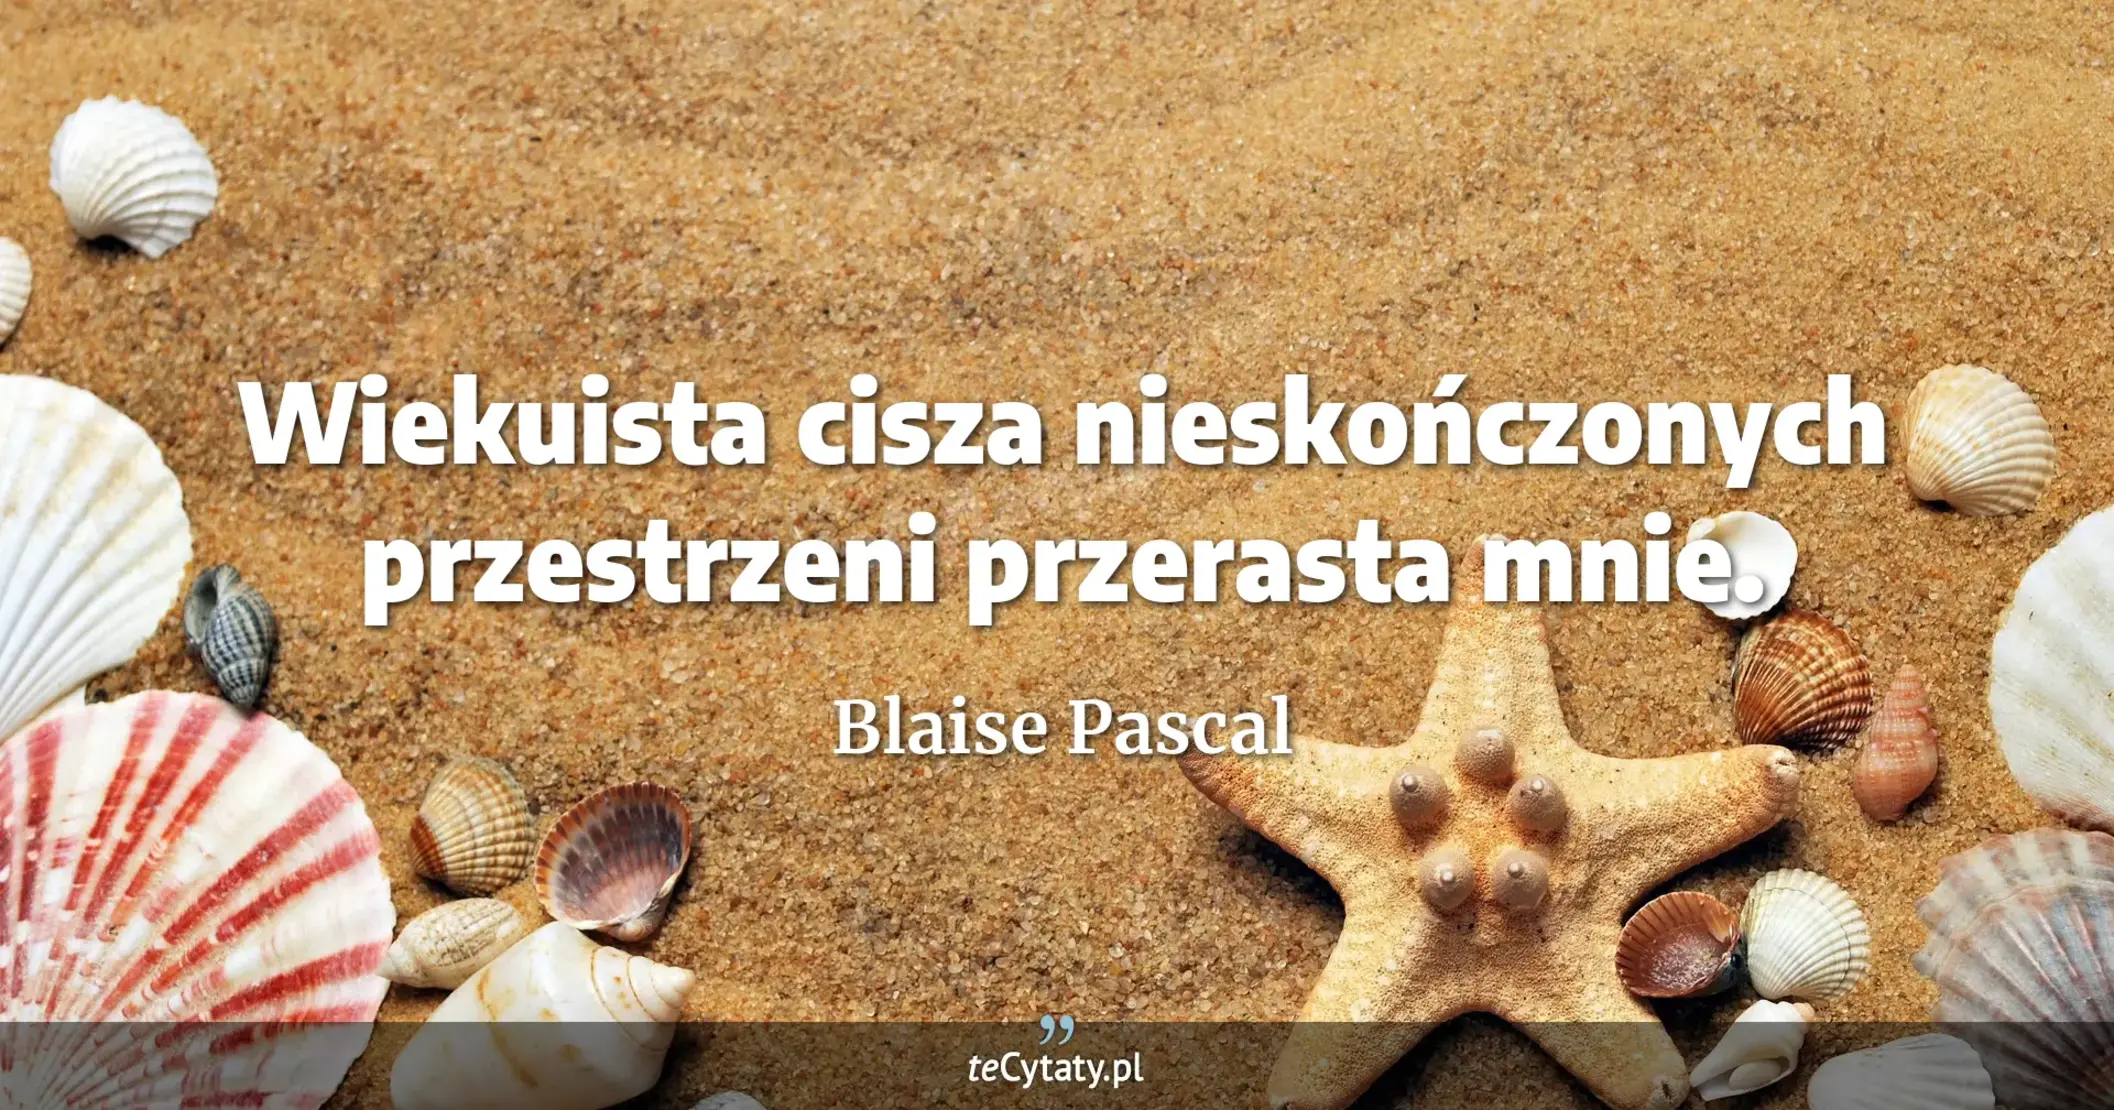 Wiekuista cisza nieskończonych przestrzeni przerasta mnie. - Blaise Pascal